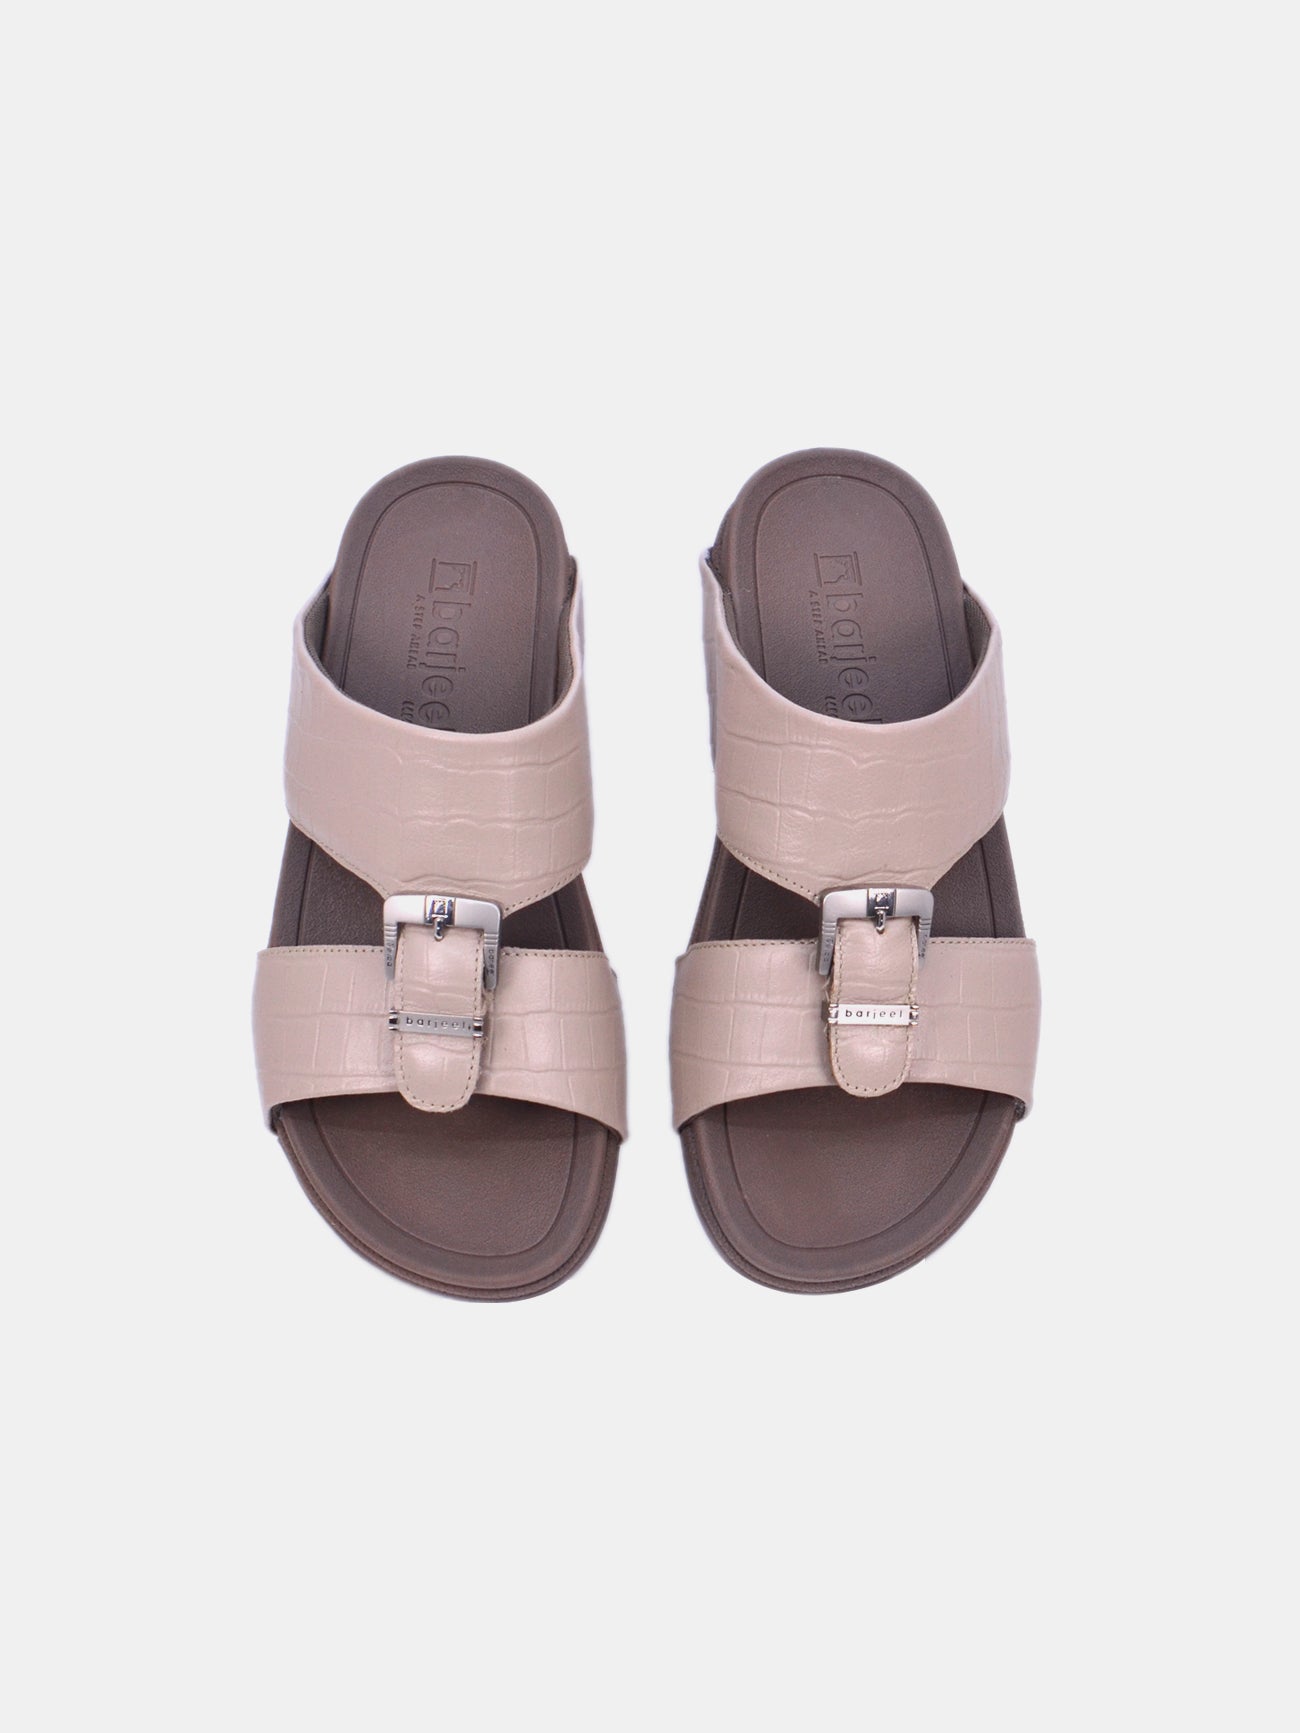 Barjeel Uno 20295 Men's Arabic Sandals #color_Beige